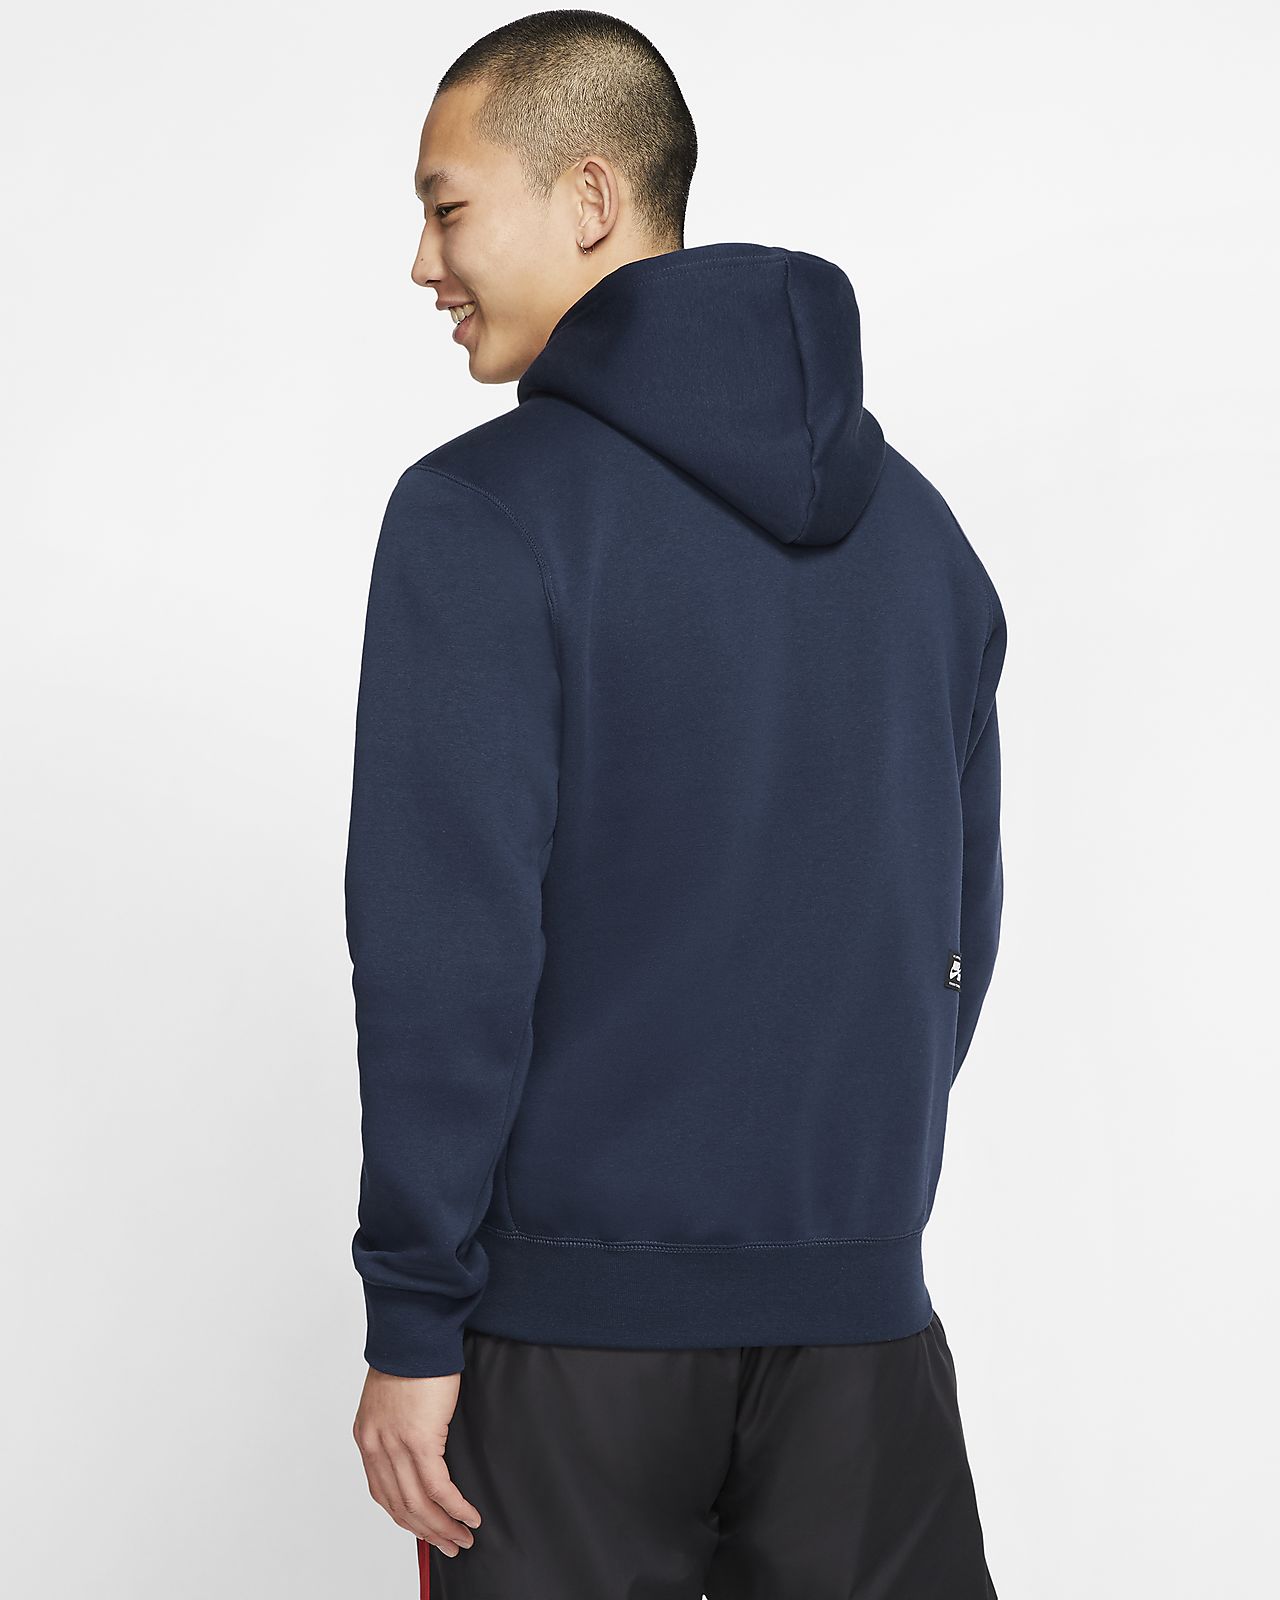 men's graphic zip up hoodies